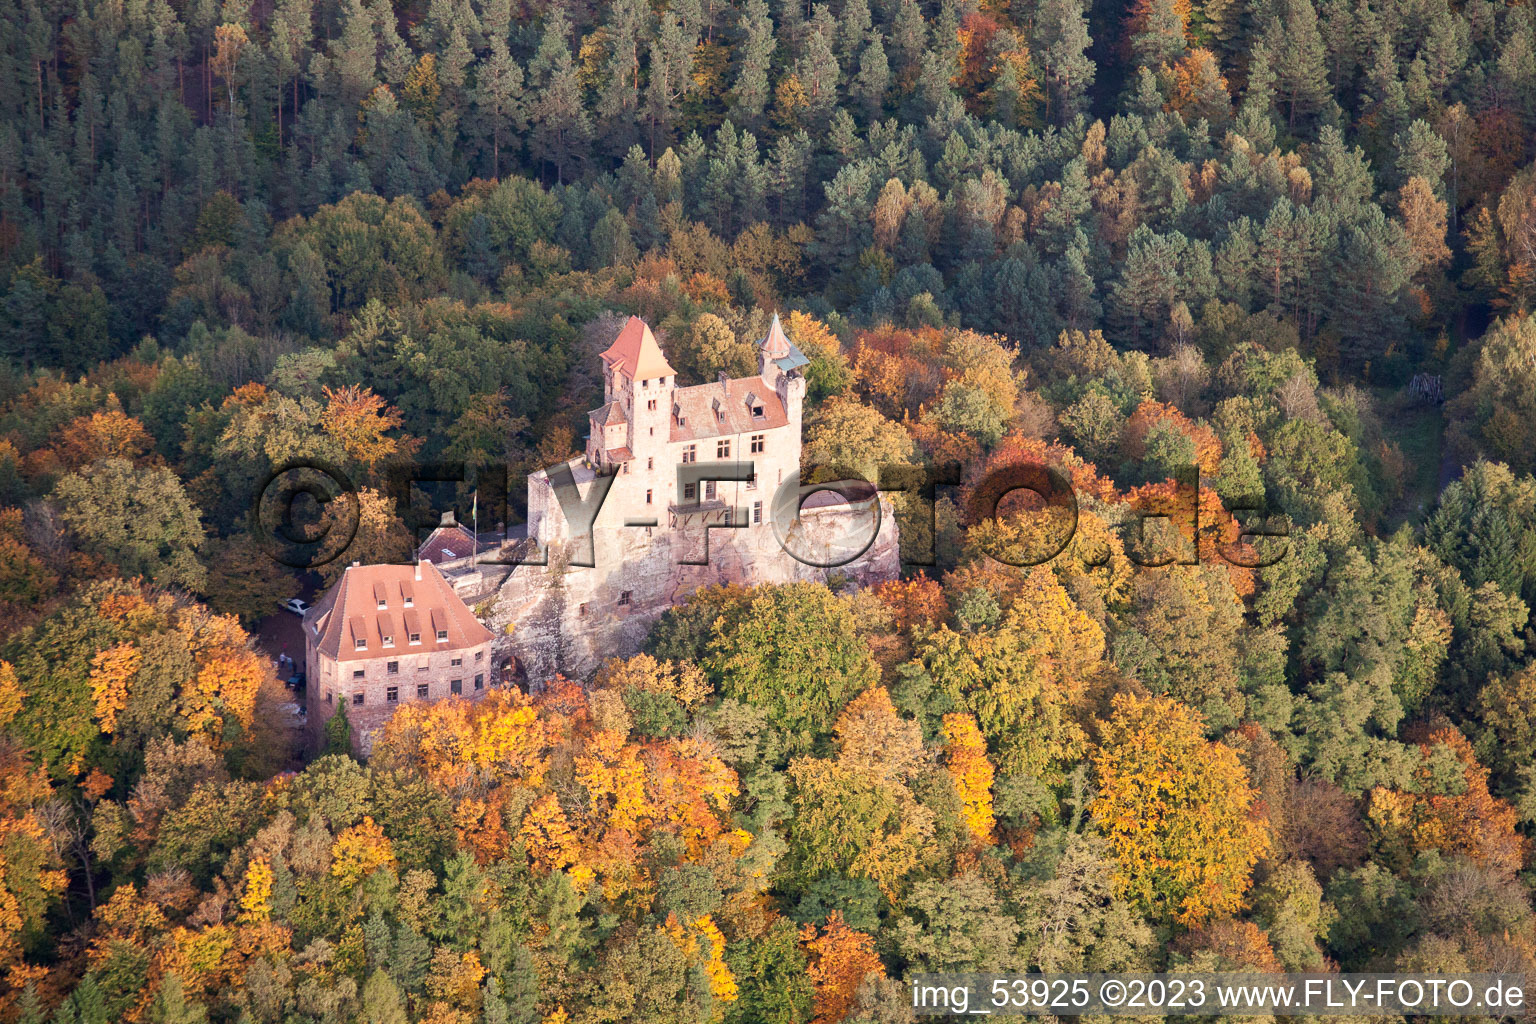 Luftbild von Burg Berwartstein in Erlenbach bei Dahn im Bundesland Rheinland-Pfalz, Deutschland